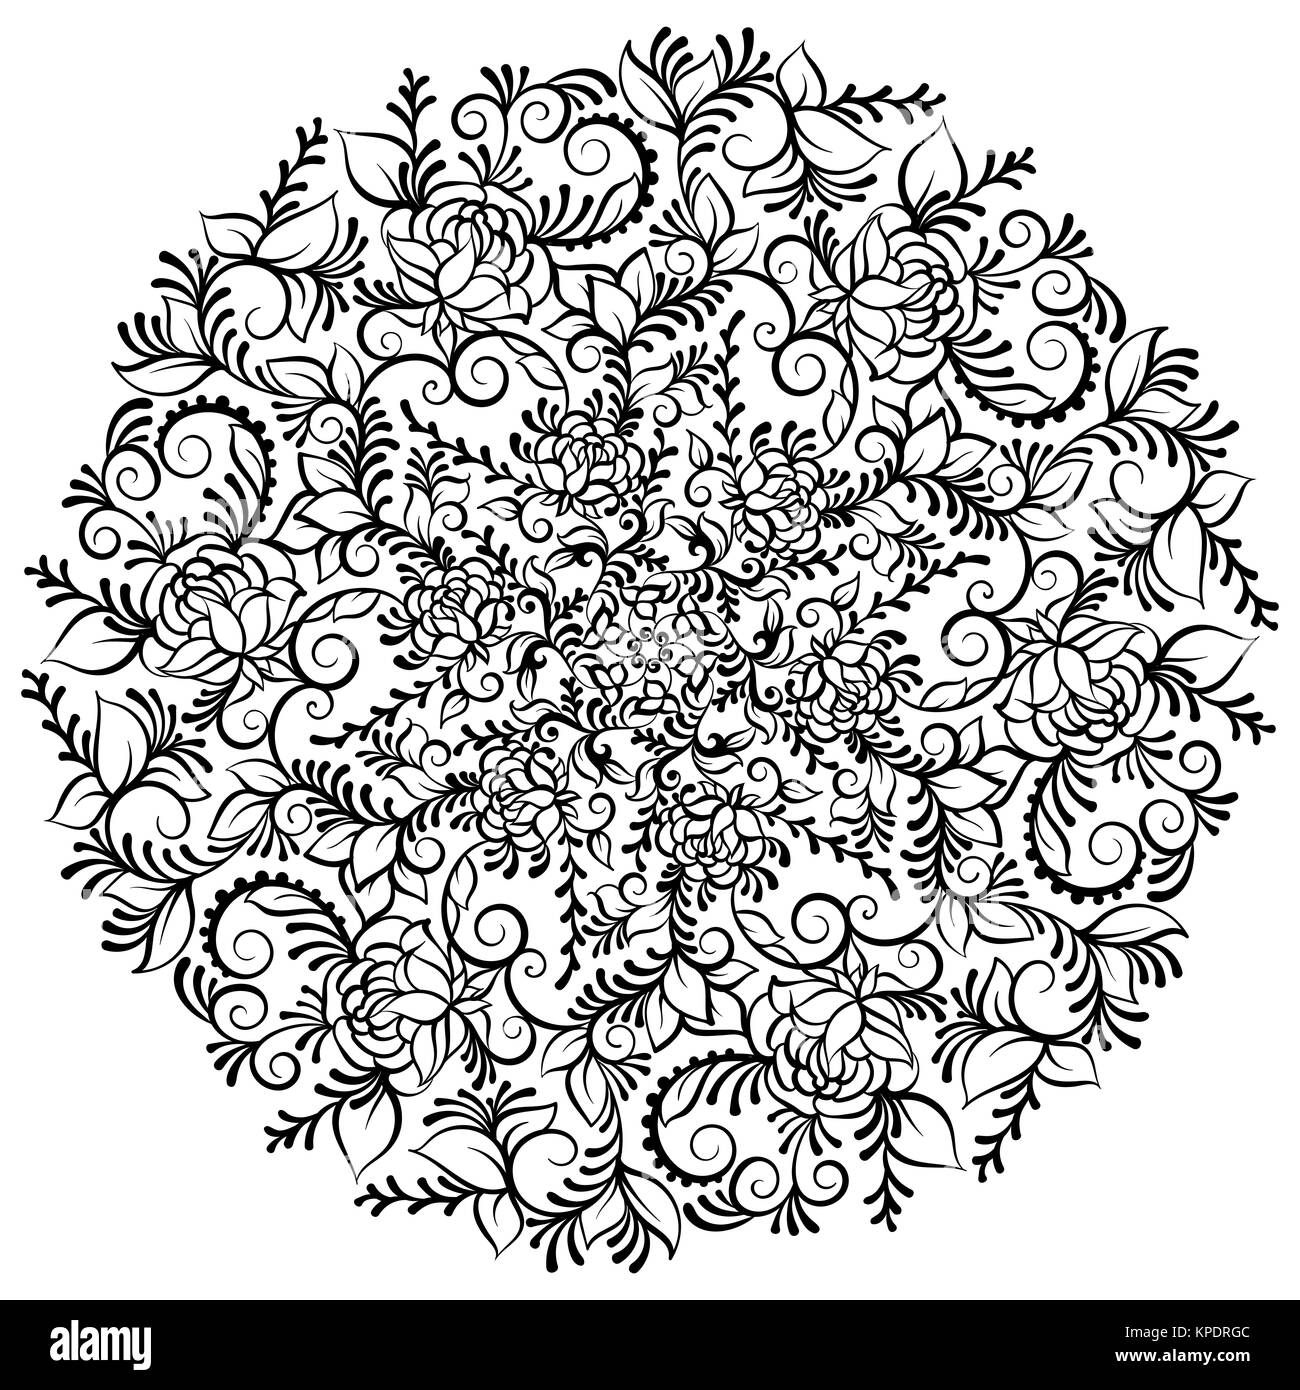 Fantaisie orné dessiné à la main fleur dans la couronne de feuilles et de tourbillons. Vector illustration isolé. Mandala fleur Banque D'Images